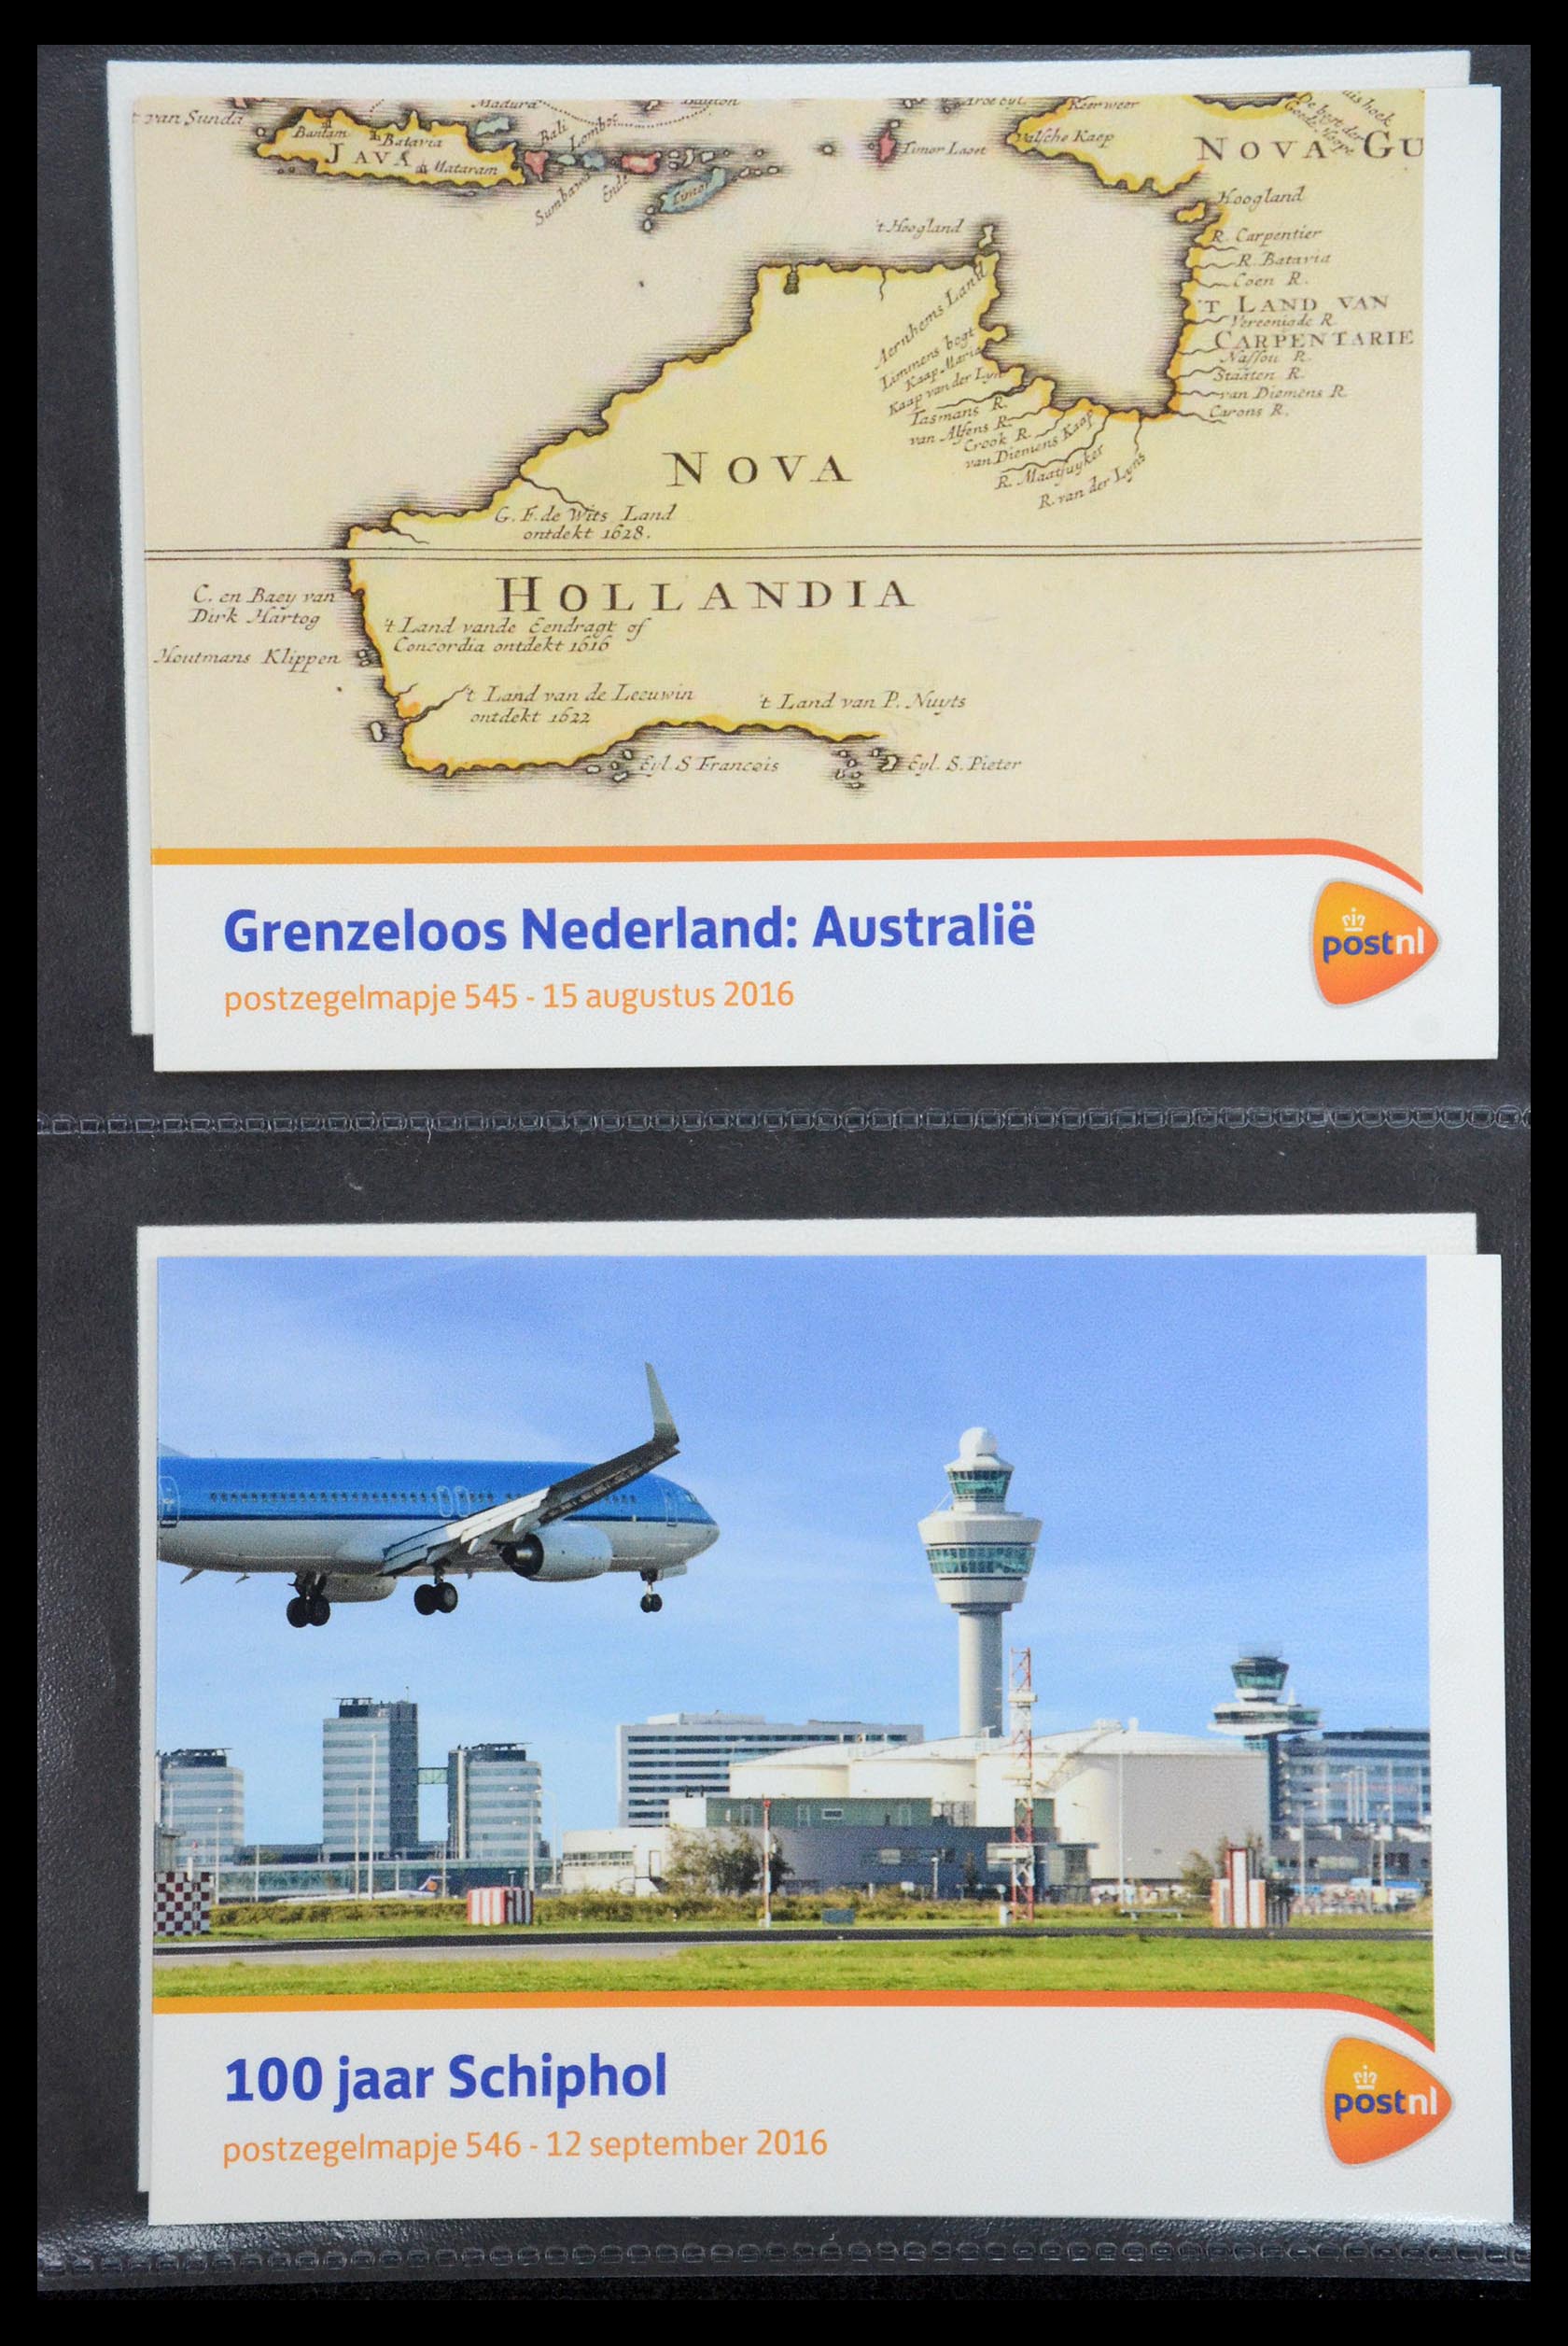 35187 325 - Stamp Collection 35187 Netherlands PTT presentation packs 1982-2019!